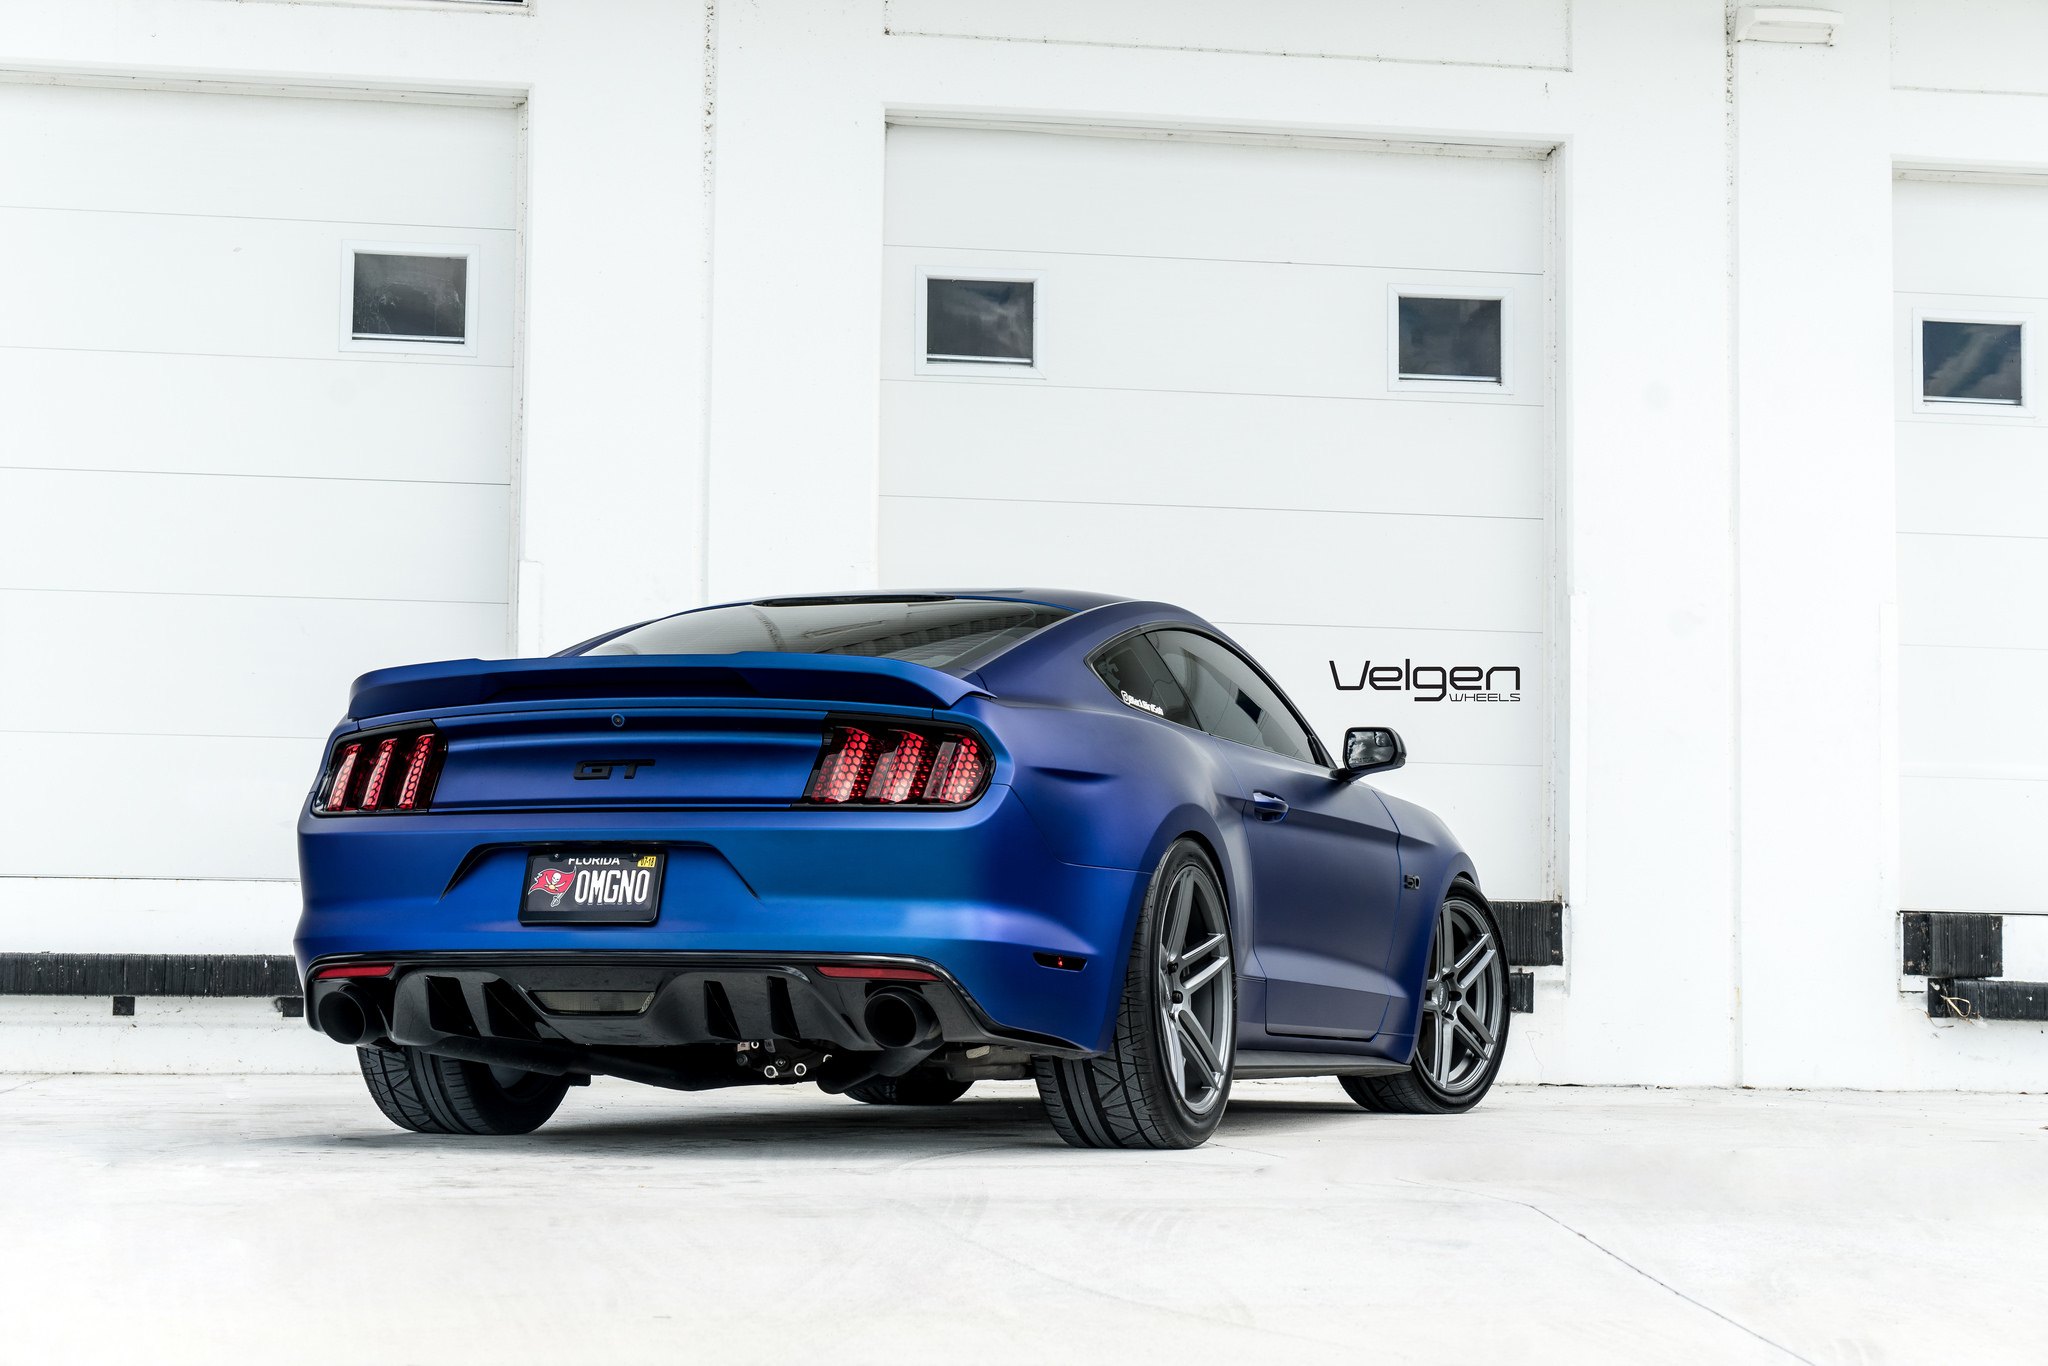 Custom Style Rear Spoiler on Blue Ford Mustang - Photo by Velgen